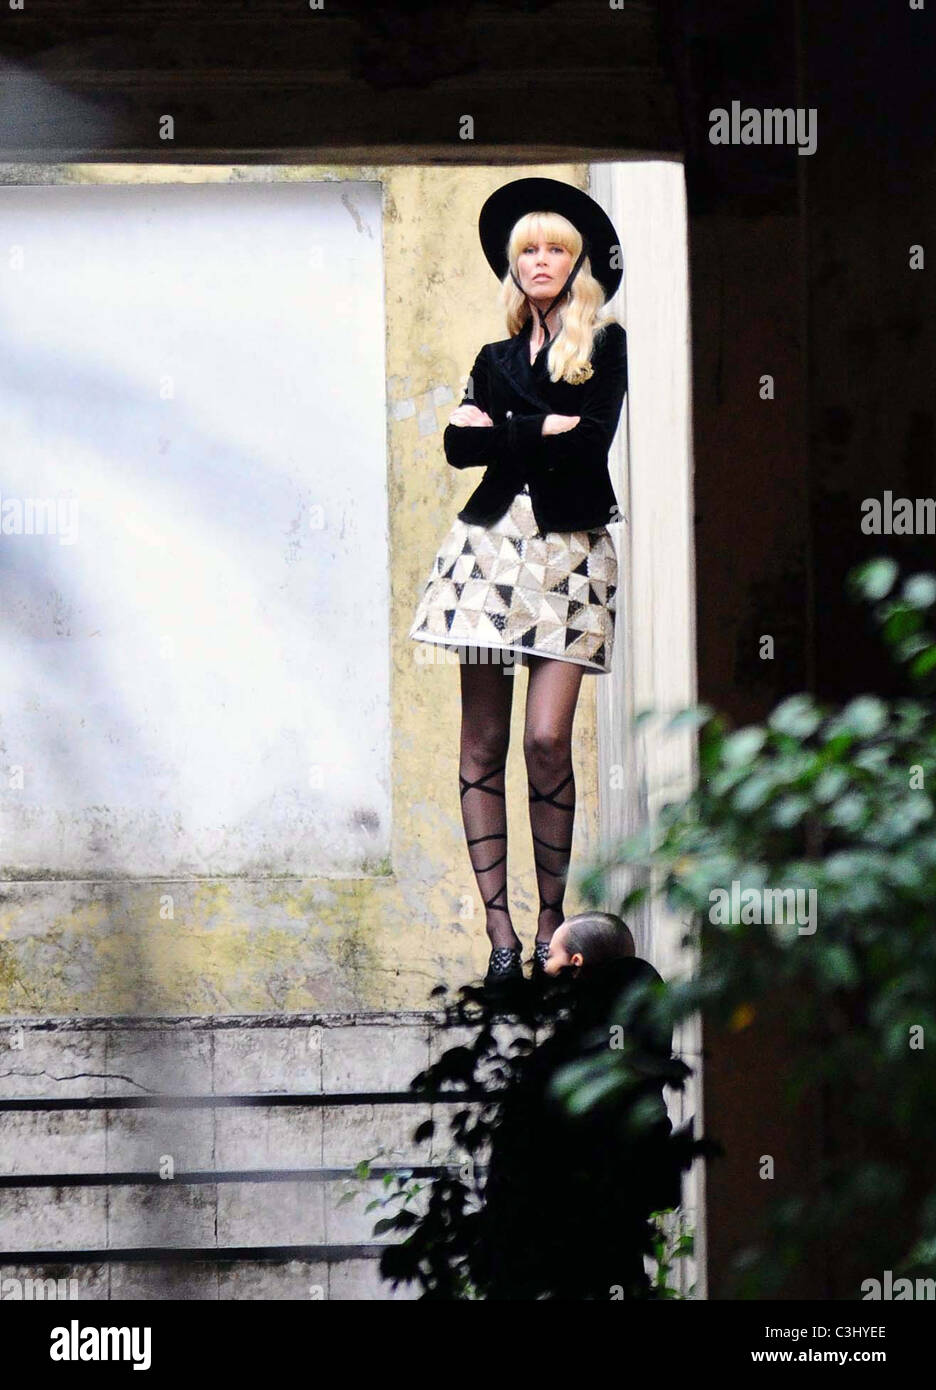 Claudia Schiffer el rodaje de una nueva campaña publicitaria para Chanel  Buenos Aires, Argentina - 21.10.09 Fotografía de stock - Alamy